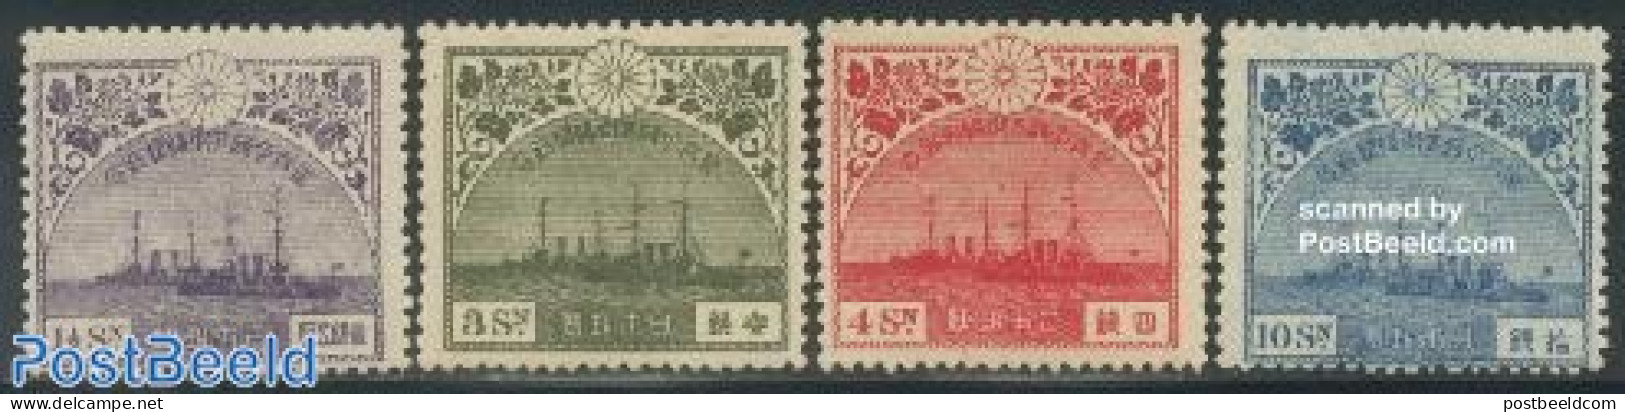 Japan 1921 European Visit Of Crown Prince 4v, Unused (hinged), History - Transport - Kings & Queens (Royalty) - Ships .. - Unused Stamps